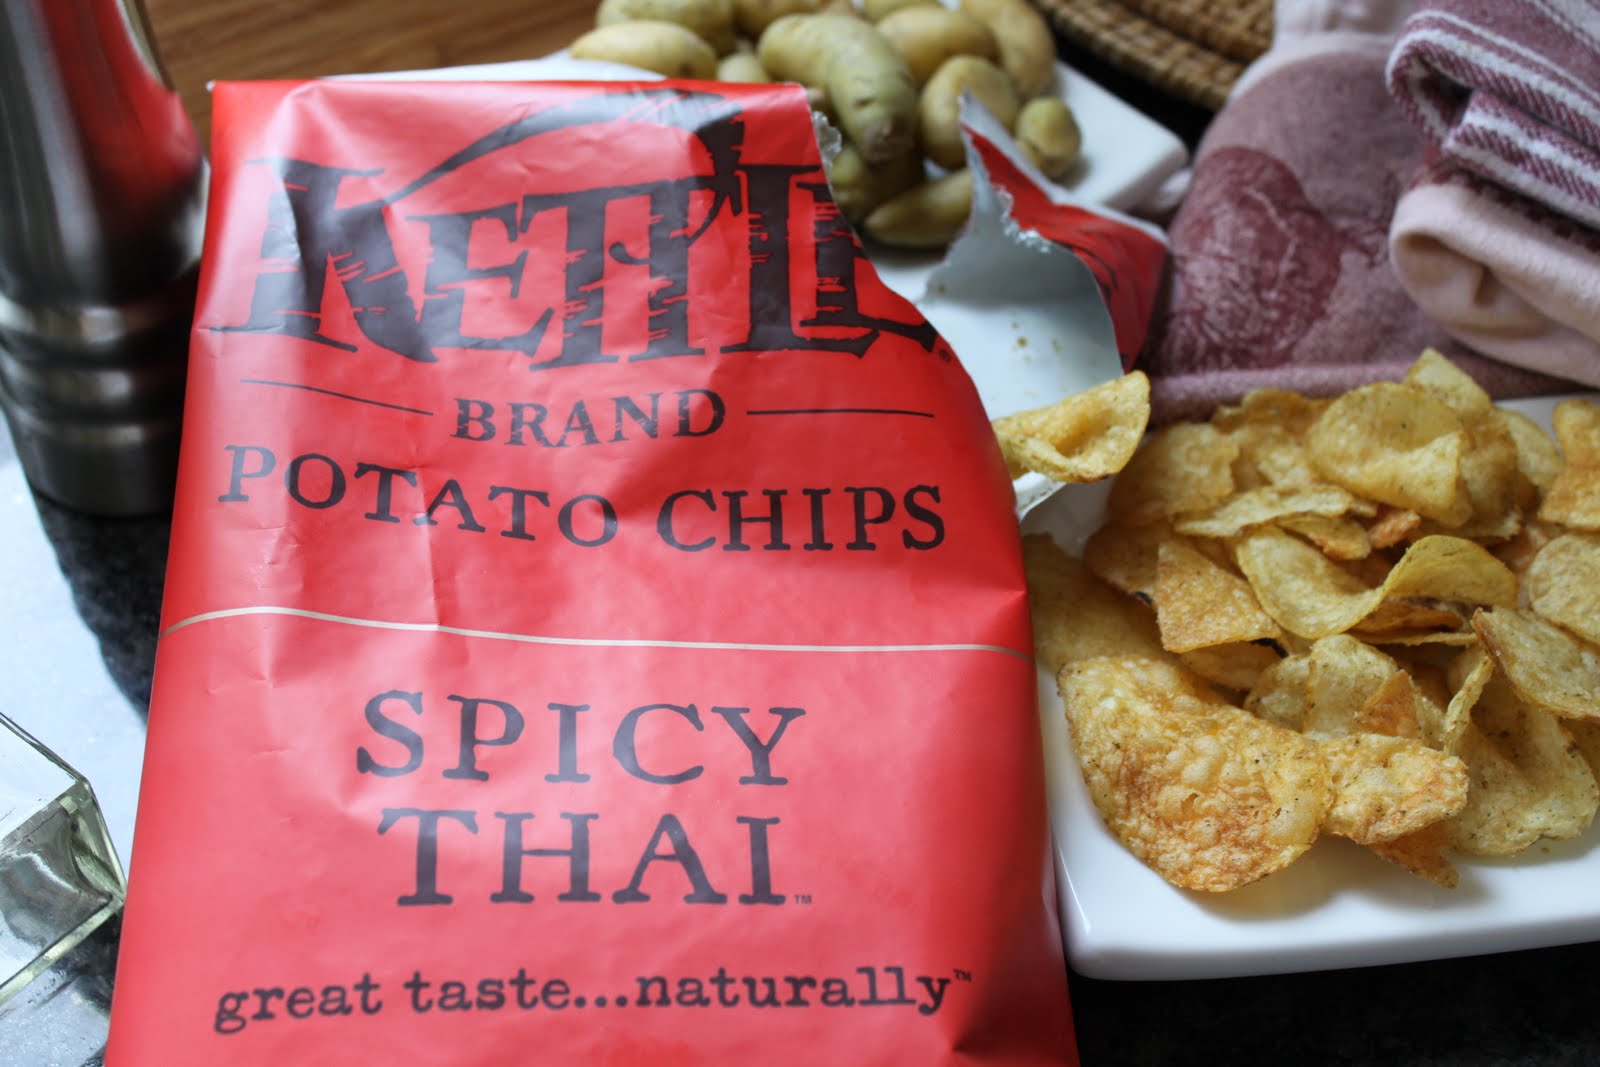 Spicy Thai Chips